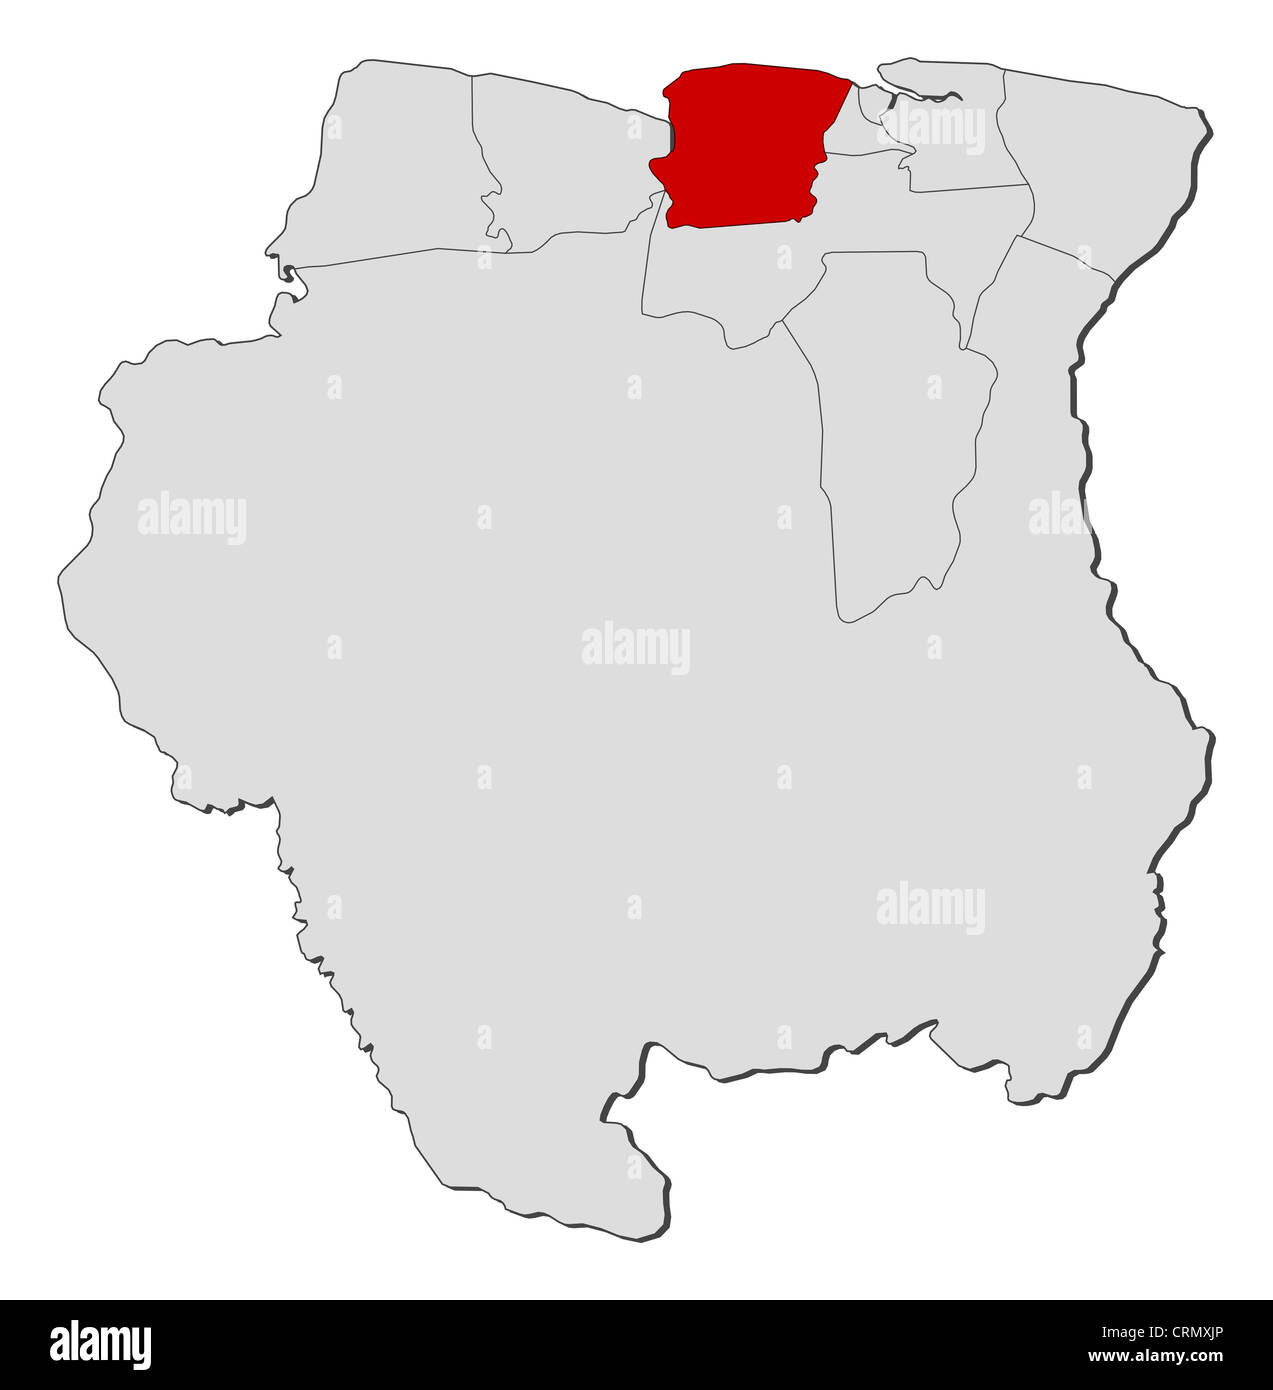 Politische Karte von Suriname mit den mehreren Bezirken, wo Saramacca markiert ist. Stockfoto